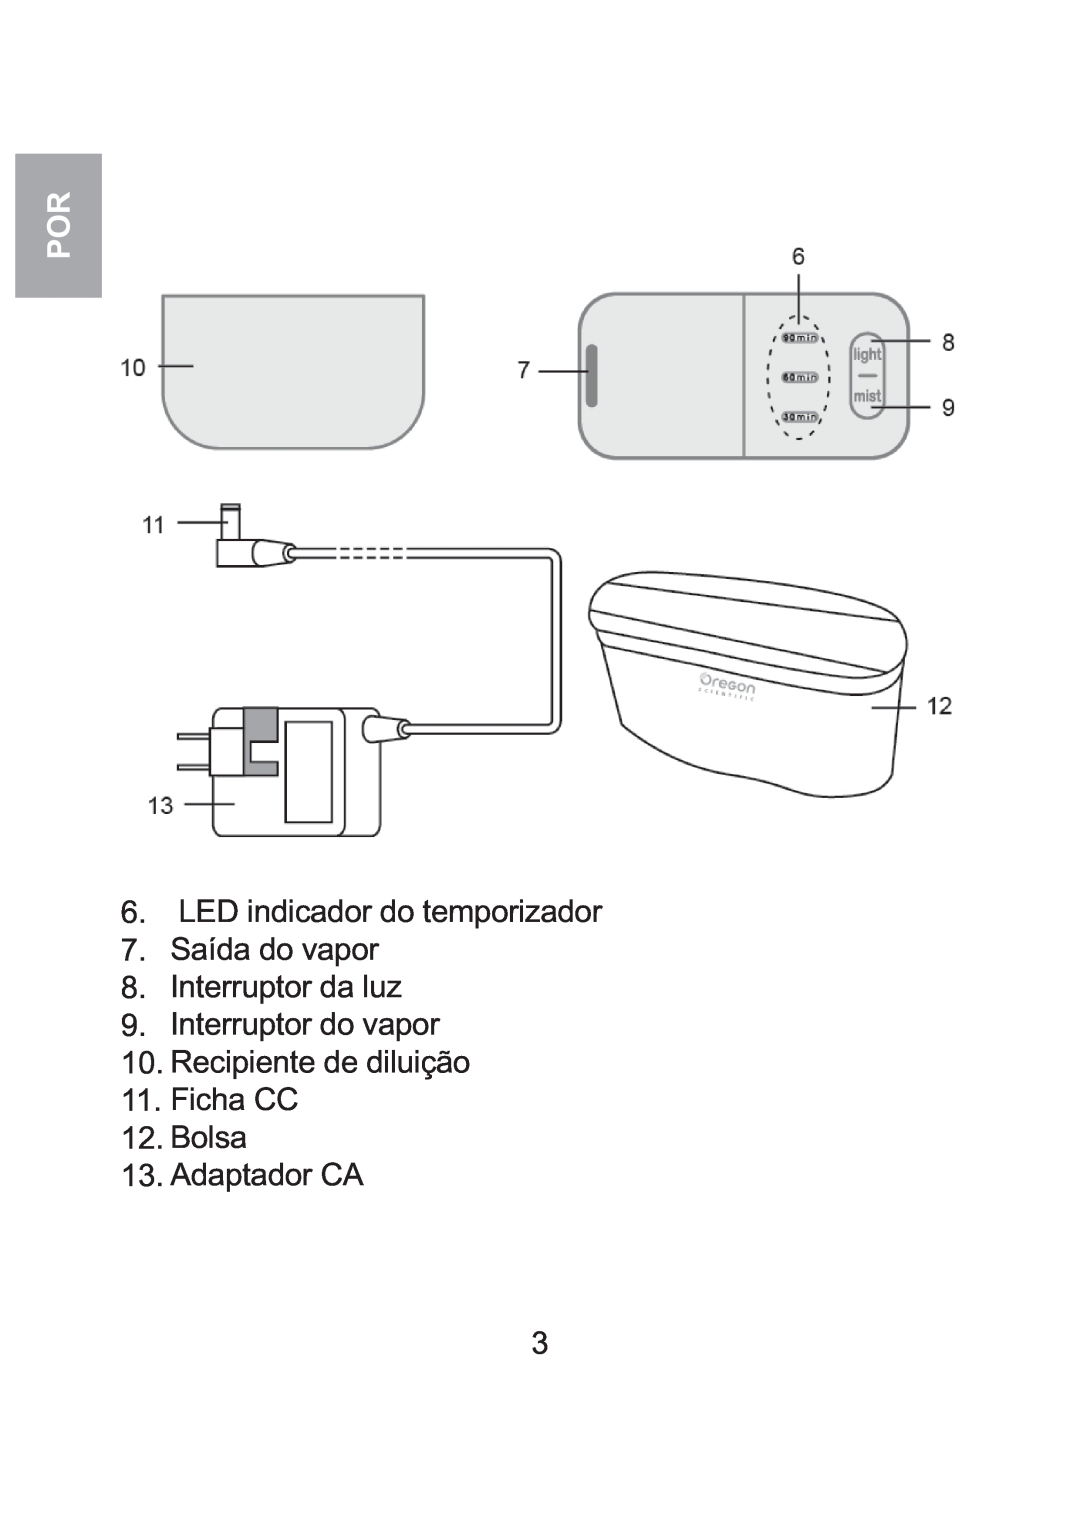 Oregon Scientific WS904 LED indicador do temporizador 7.Saída do vapor, Interruptor da luz 9.Interruptor do vapor 